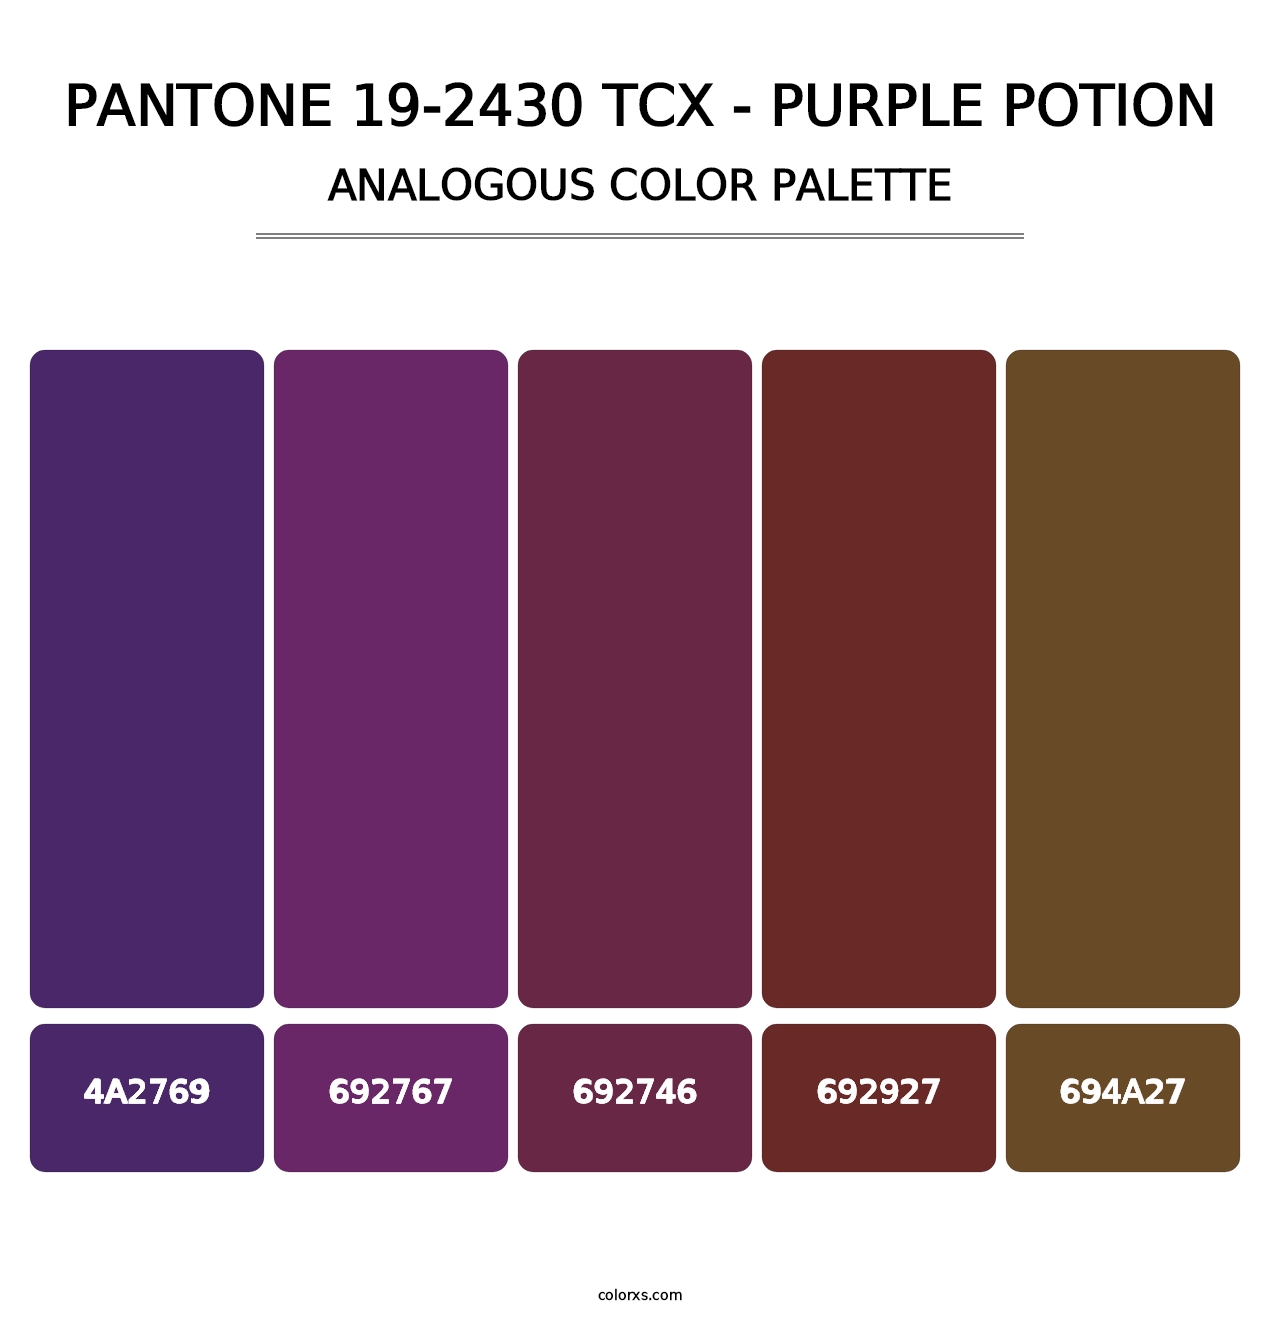 PANTONE 19-2430 TCX - Purple Potion - Analogous Color Palette